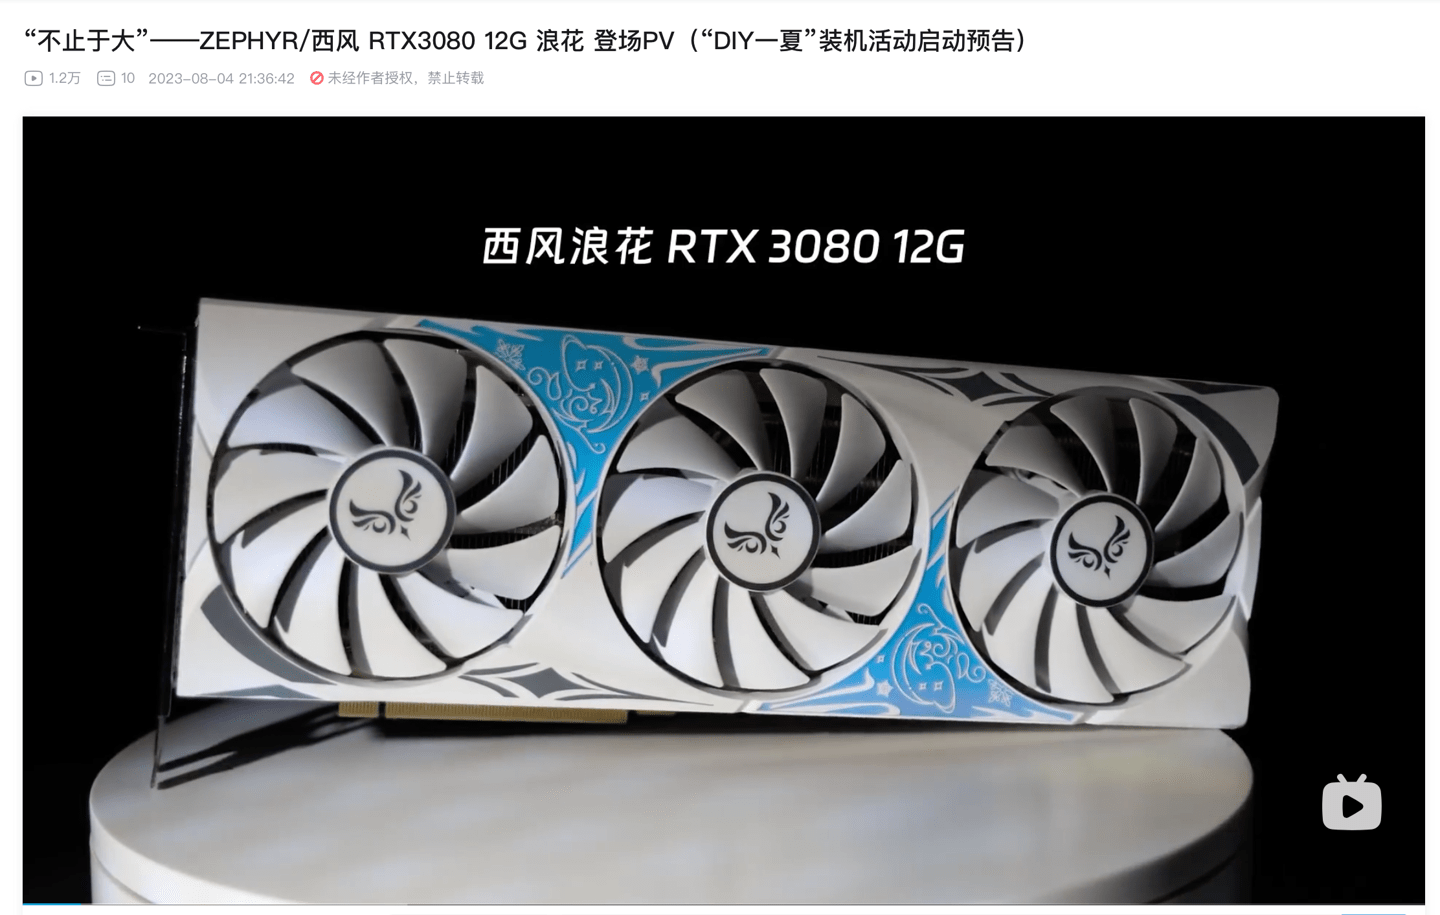 厂商西风推出“新款” RTX 3080 12G显卡：搭载GA102-220核心 CUDA处理器为8960